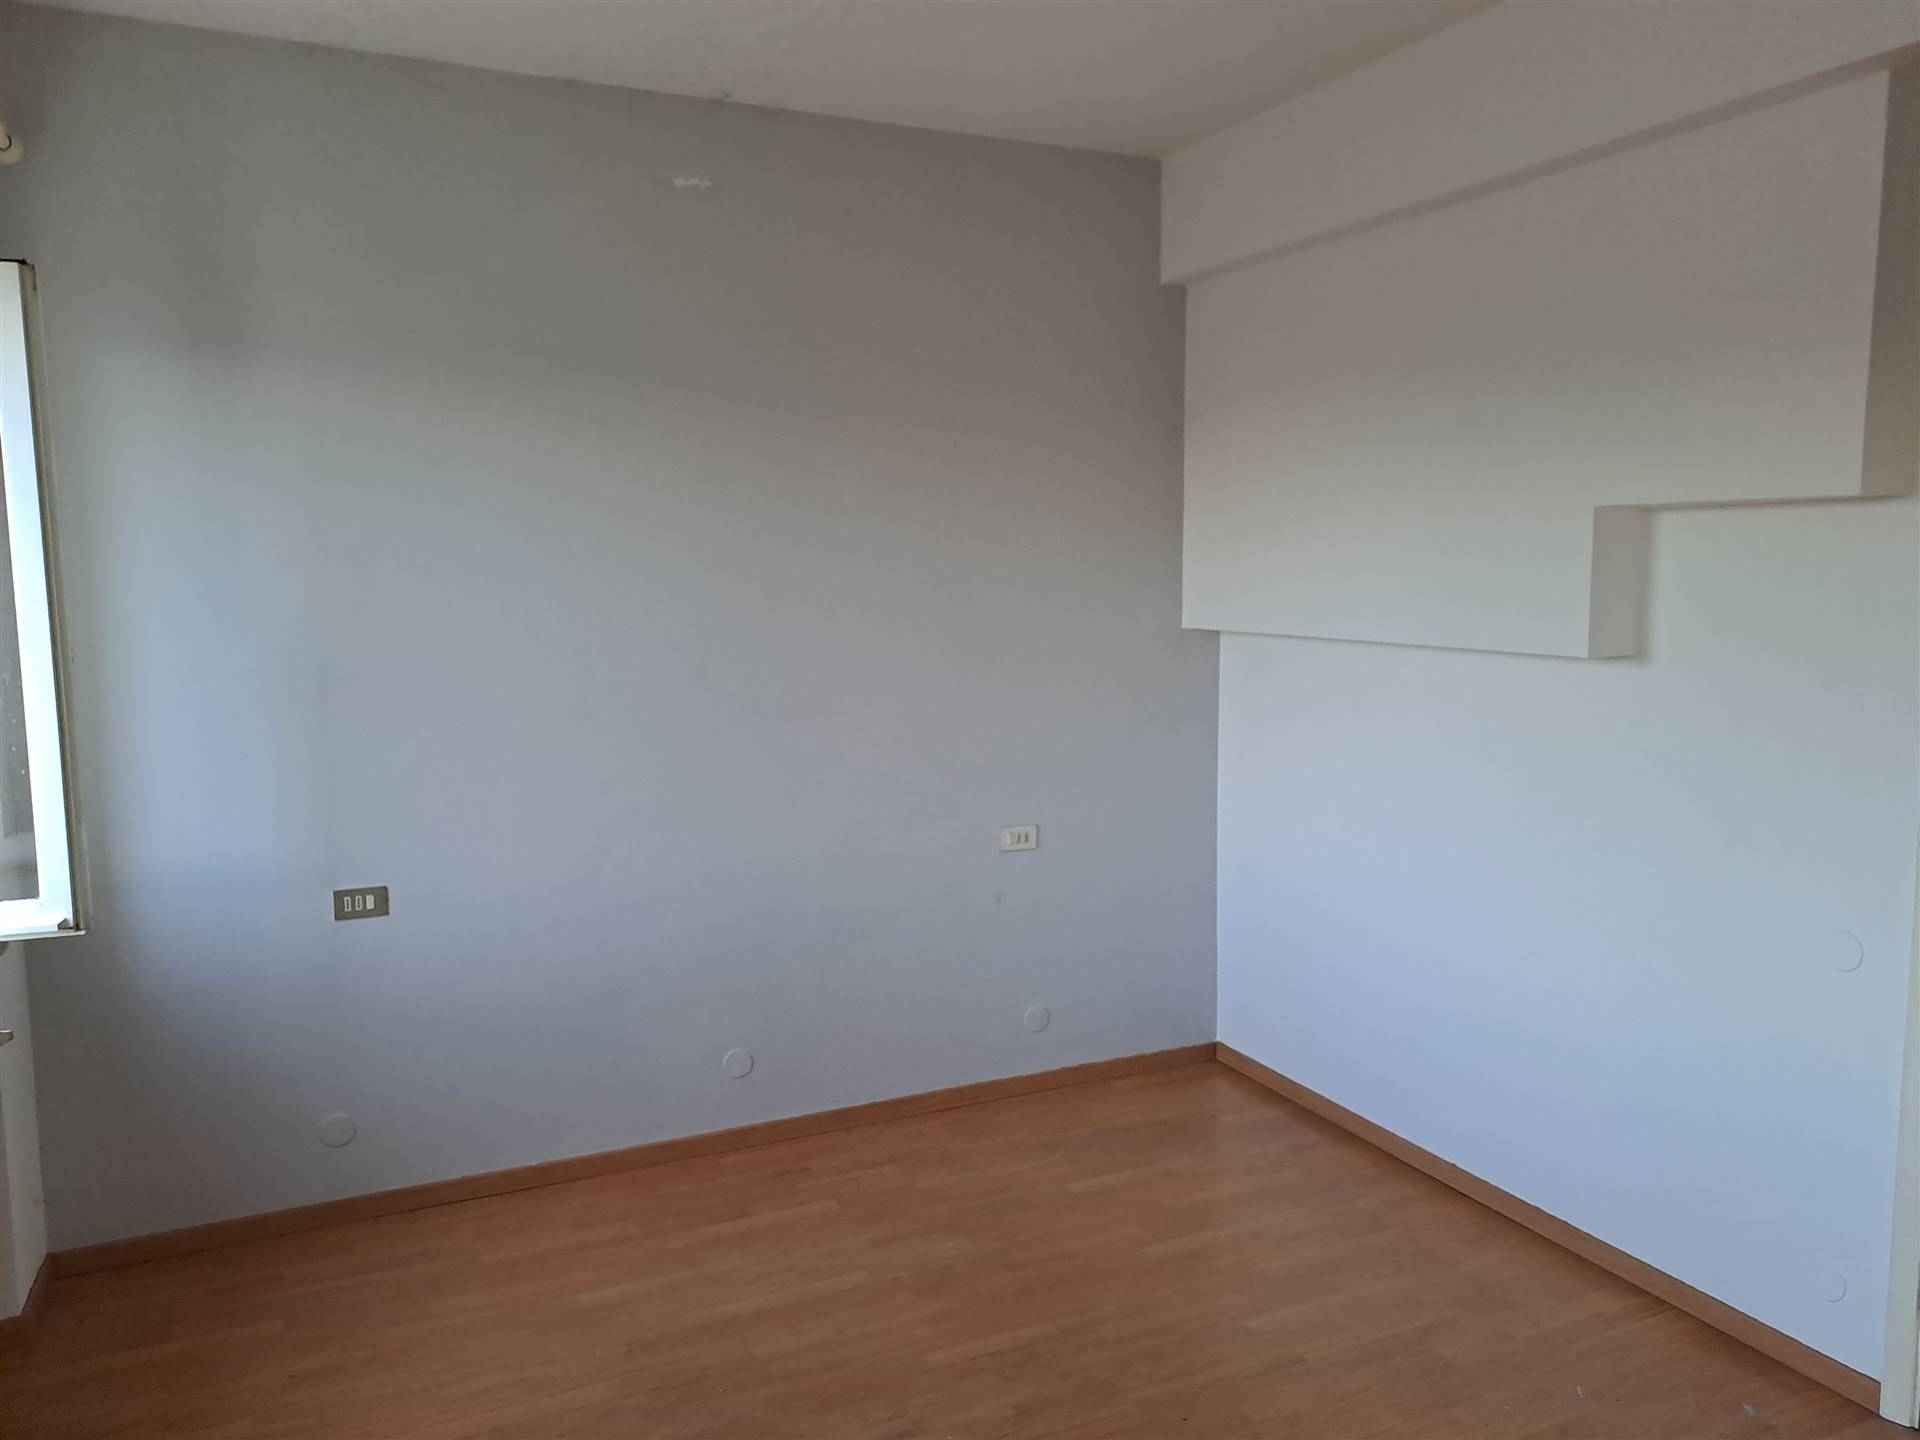 Appartamento in vendita a Montecarotto, 4 locali, prezzo € 34.000 | PortaleAgenzieImmobiliari.it